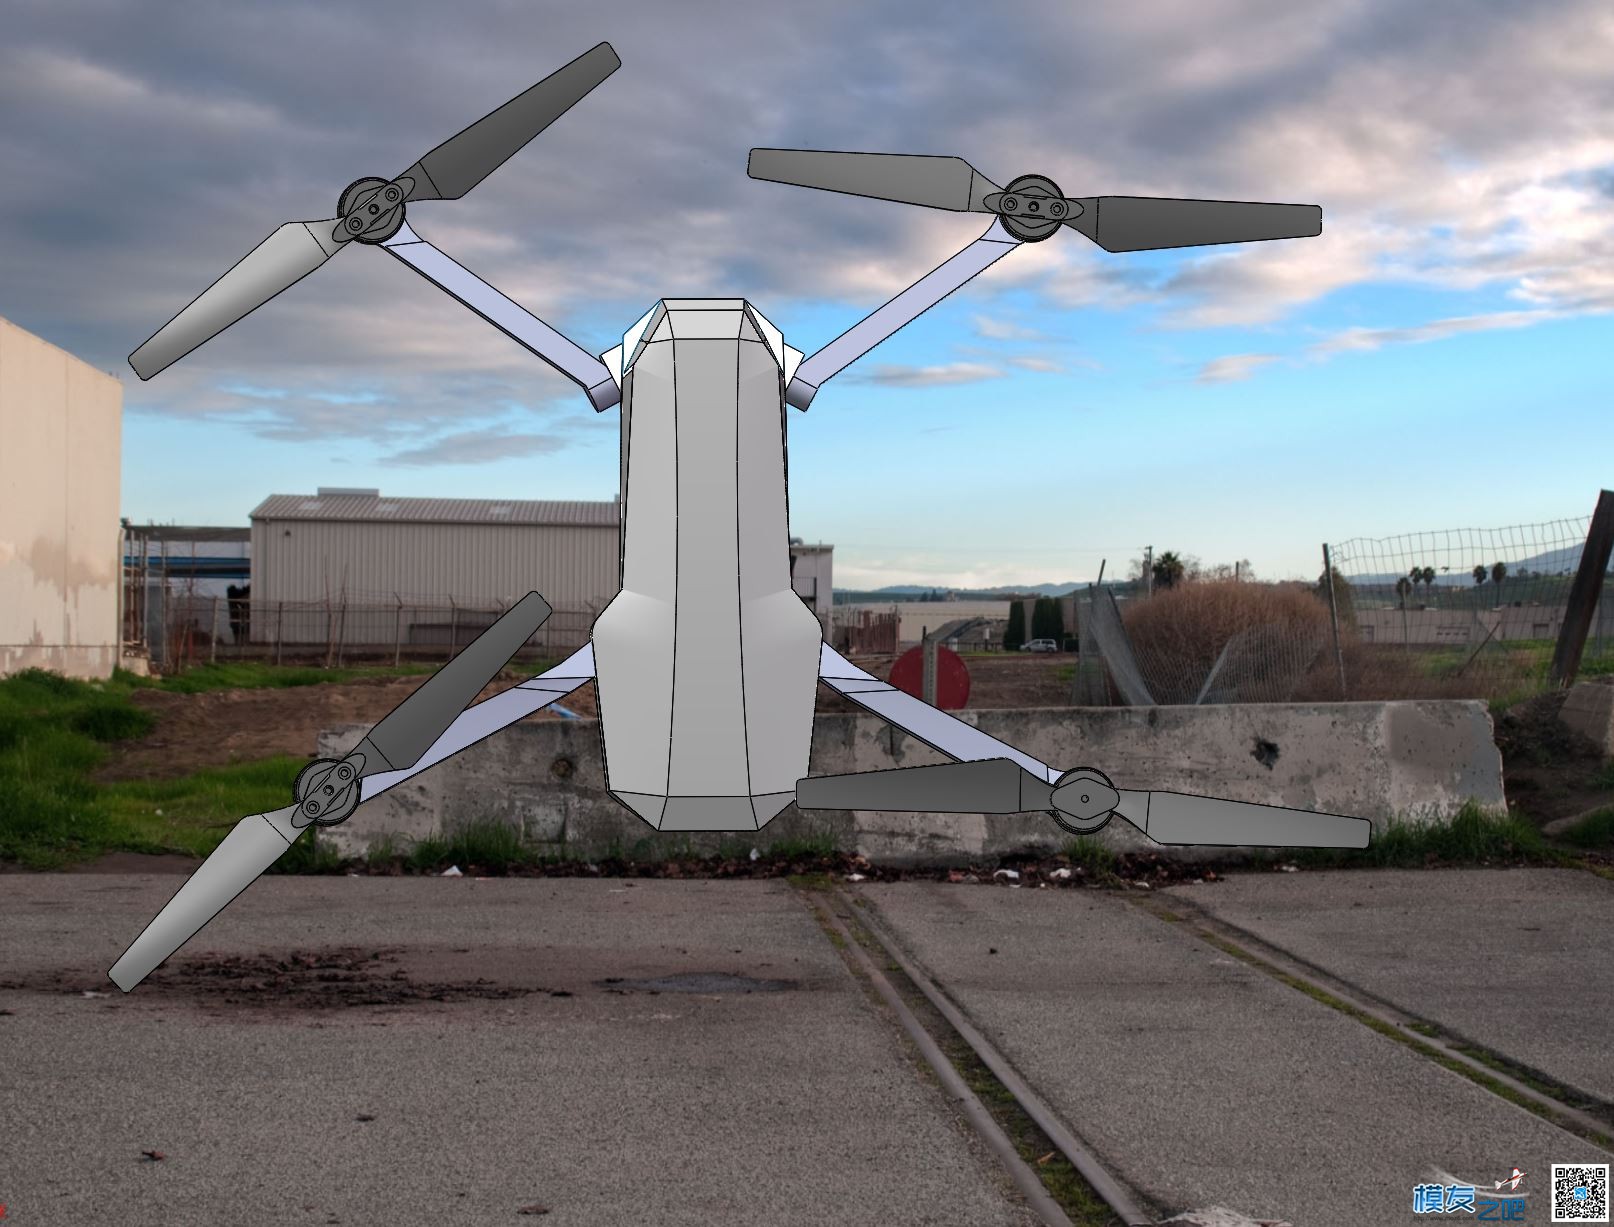 自制大疆mavic折叠无人机 全新设计 慢更 无人机,穿越机,电池,云台,图传 作者:zoney 3985 